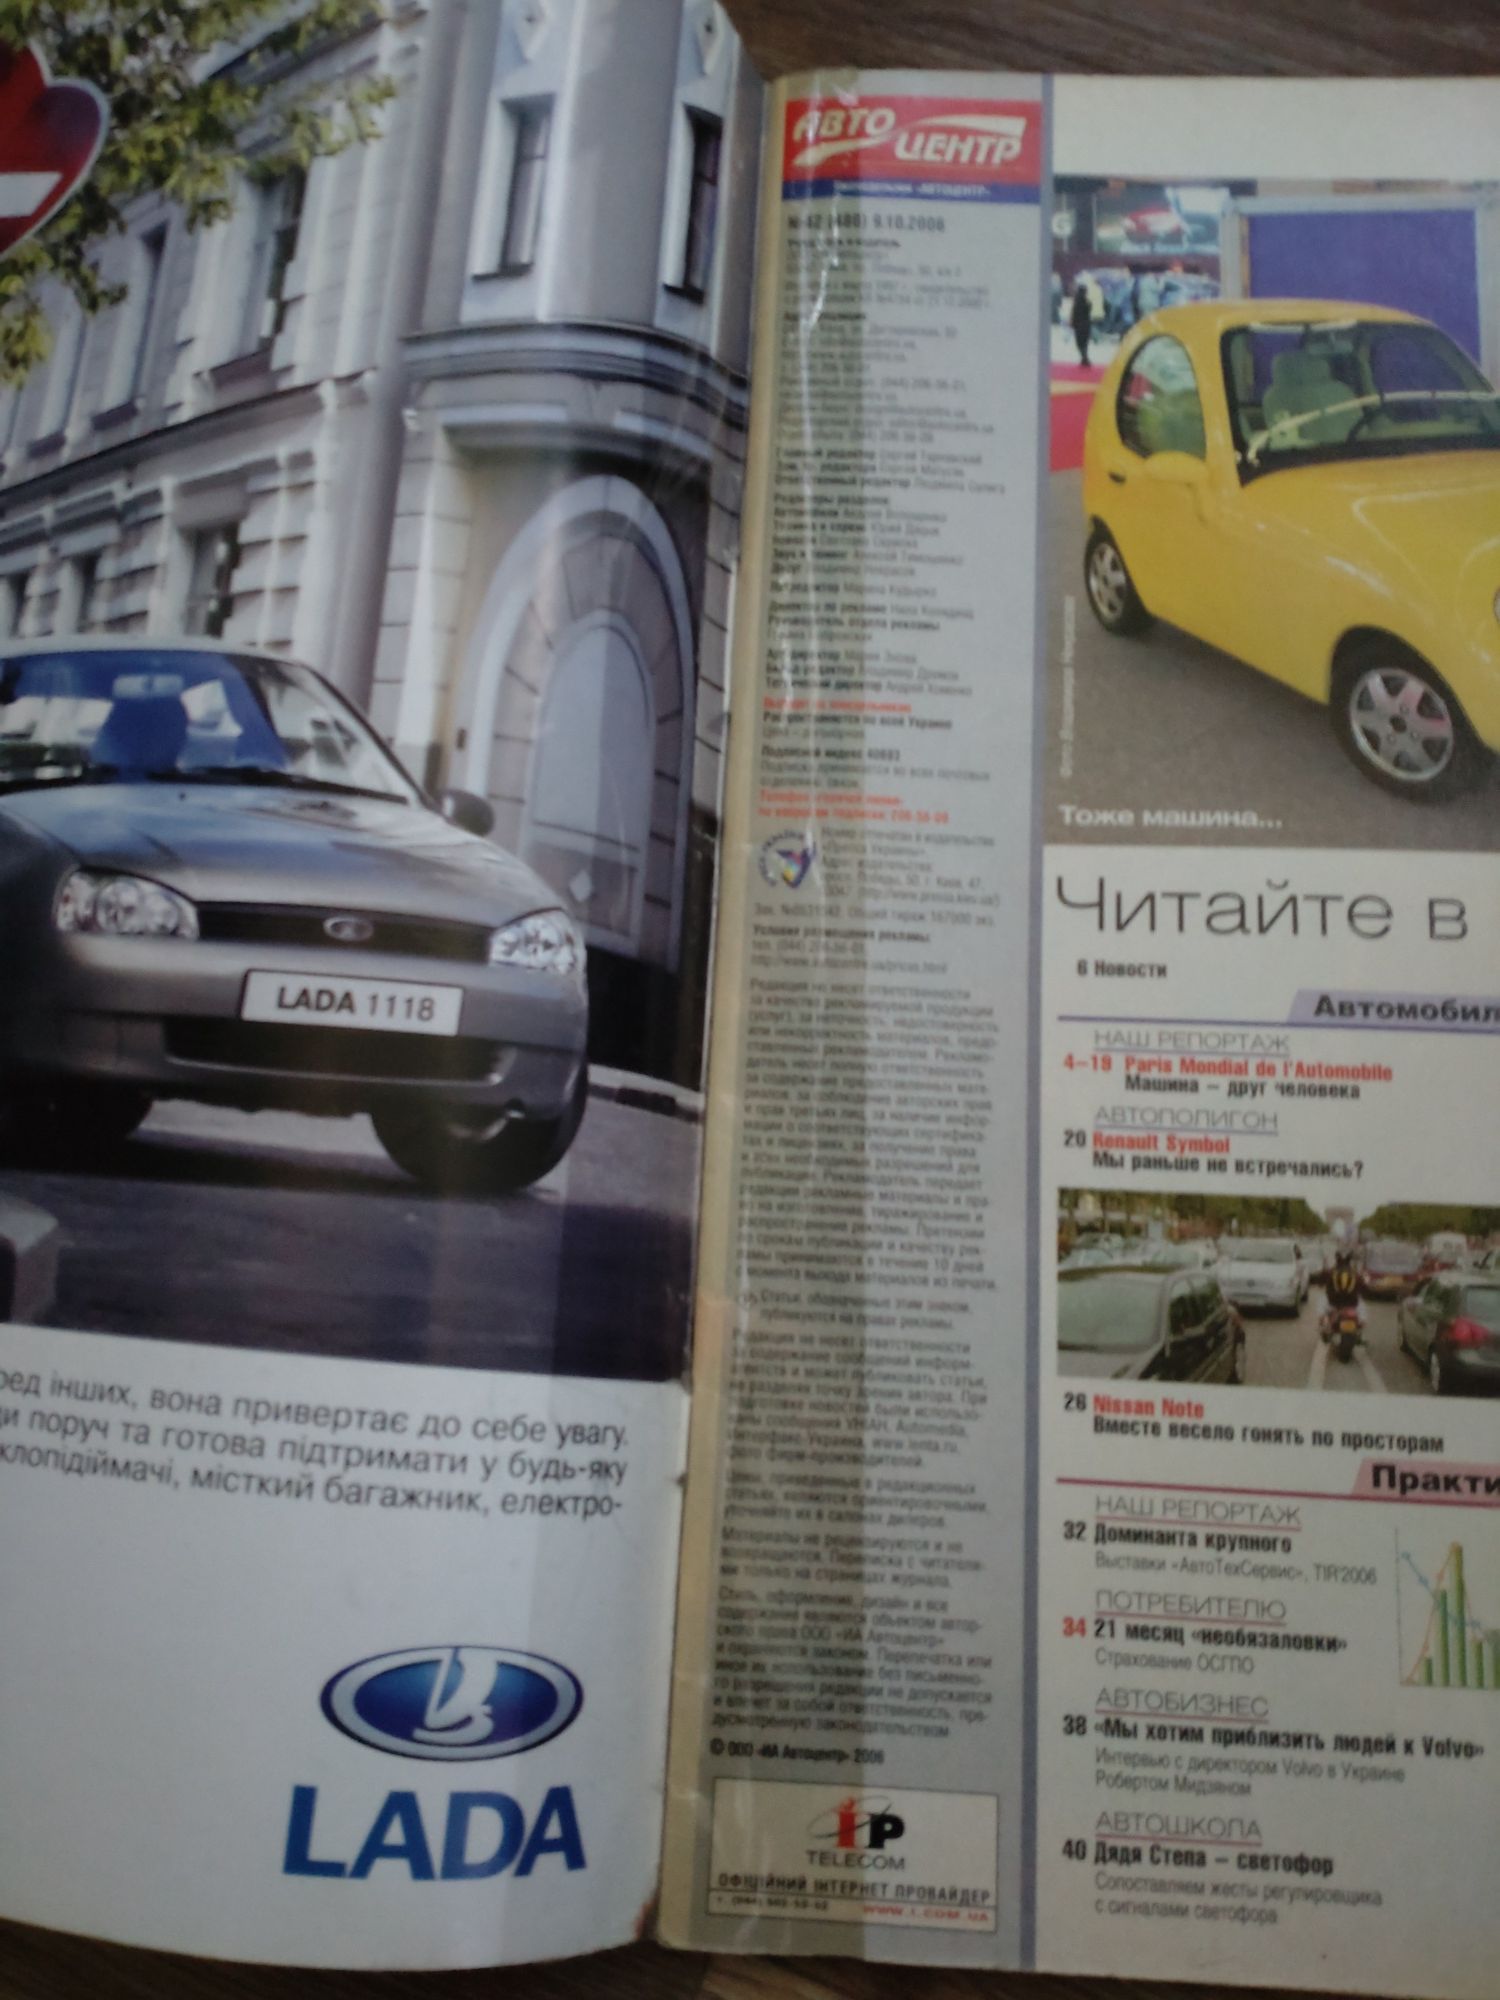 Журналы "Авто Центр" 2006 и 2008 год